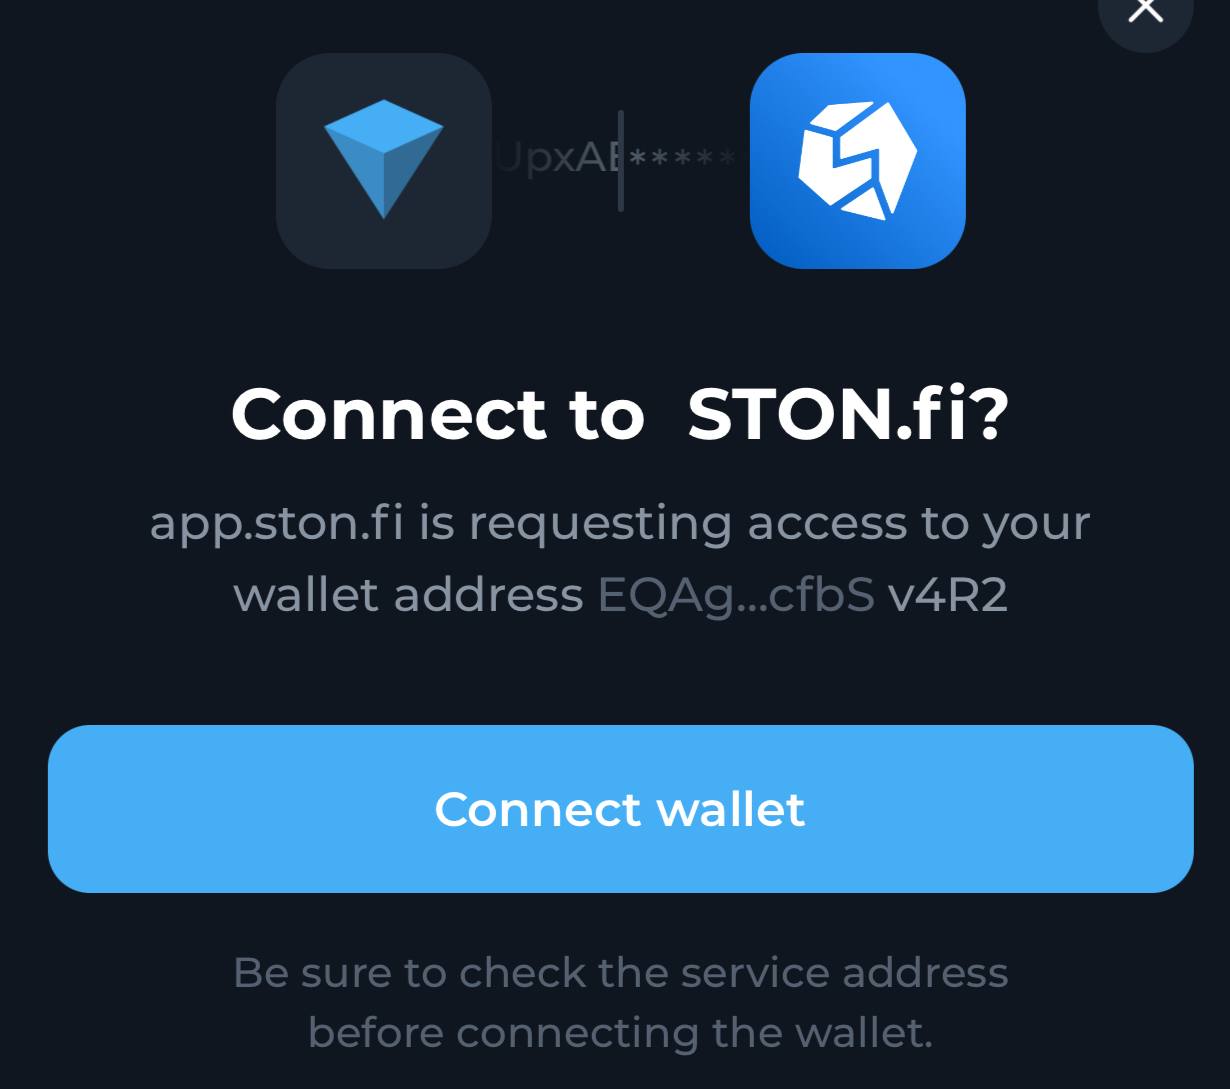 چگونه کیف پول خود را به صرافی غیرمتمرکز استون فای (STON.fi) متصل کنیم؟